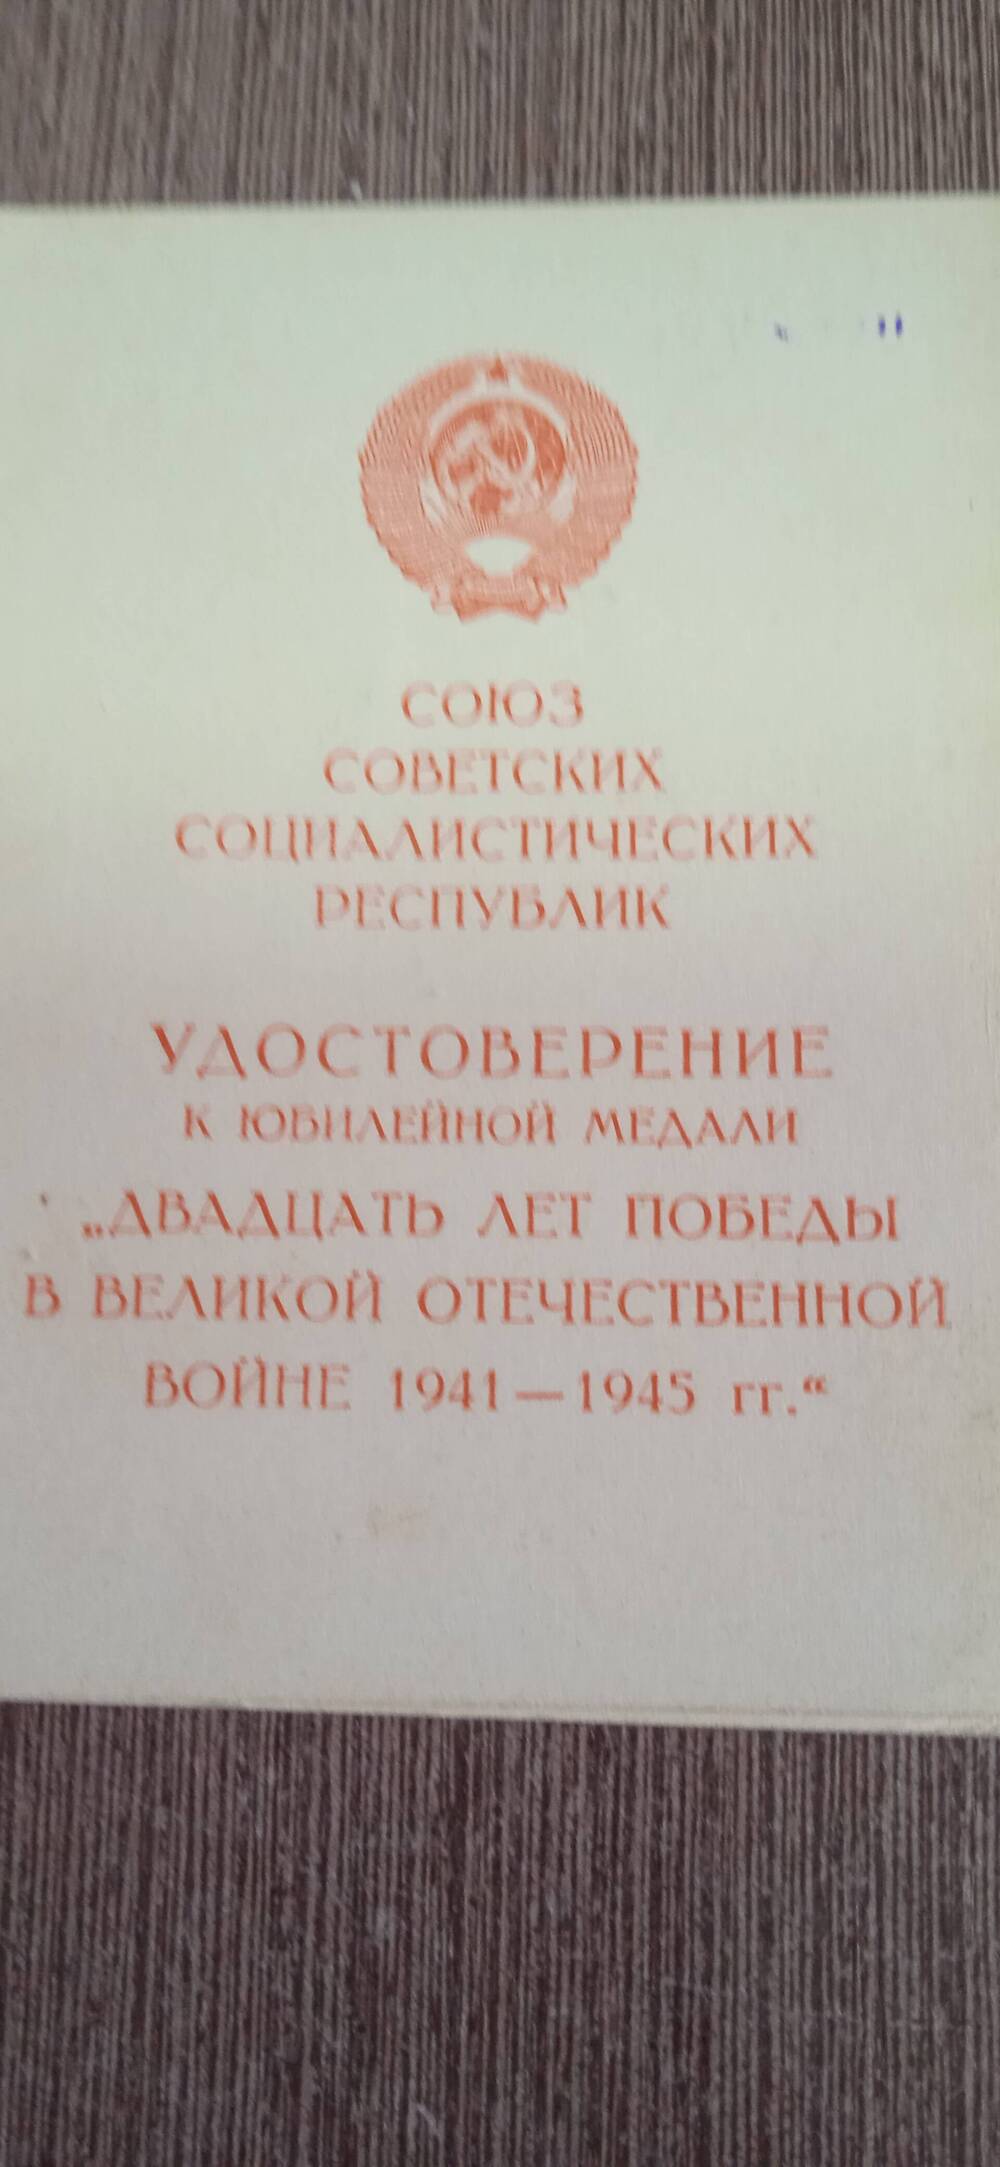 Удостоверение к юбилейной медали Двадцать лет победы в Великой Отечественной  войне 1941-1945г.г.
Закурдаев Андрей Андреевич.